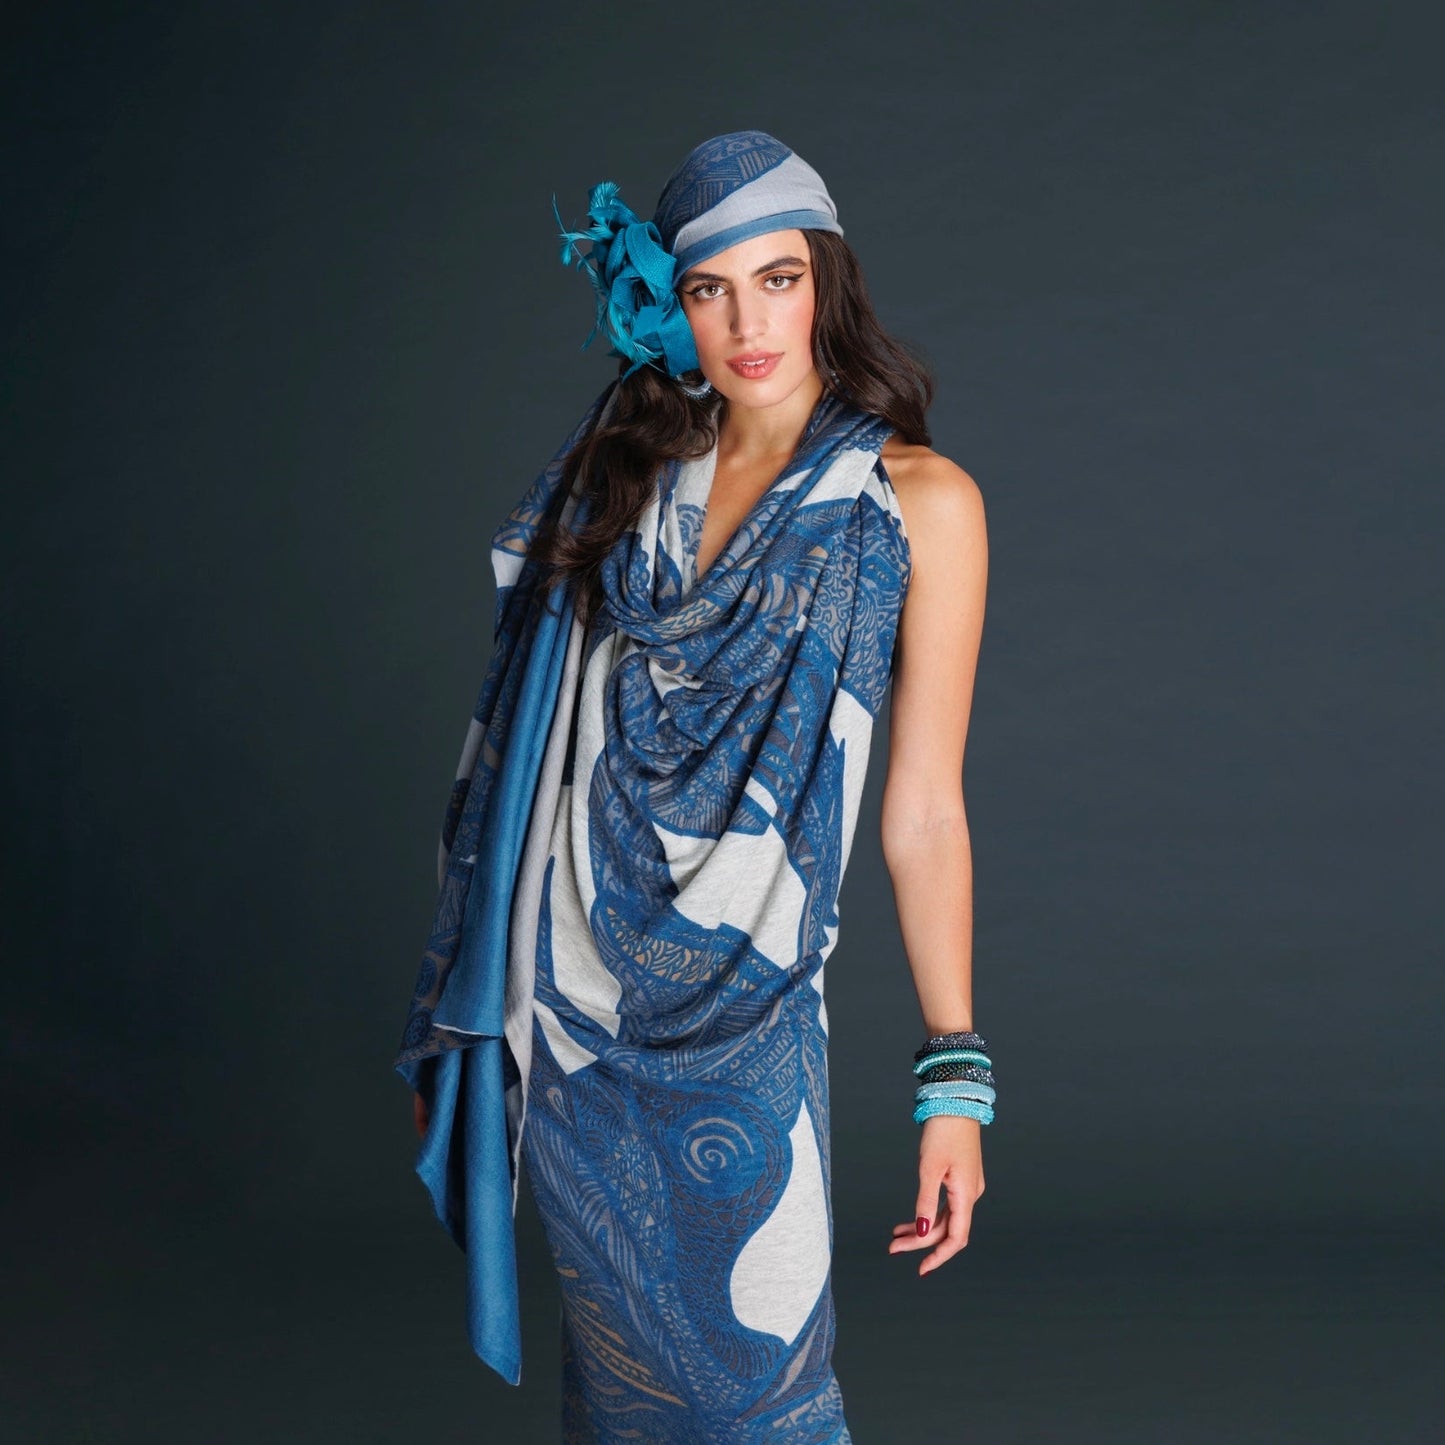 Cashmere stole or dress - SOUL LEAVES 100% cashmere fine knit XL 200x200 - blue petrol &amp; greige